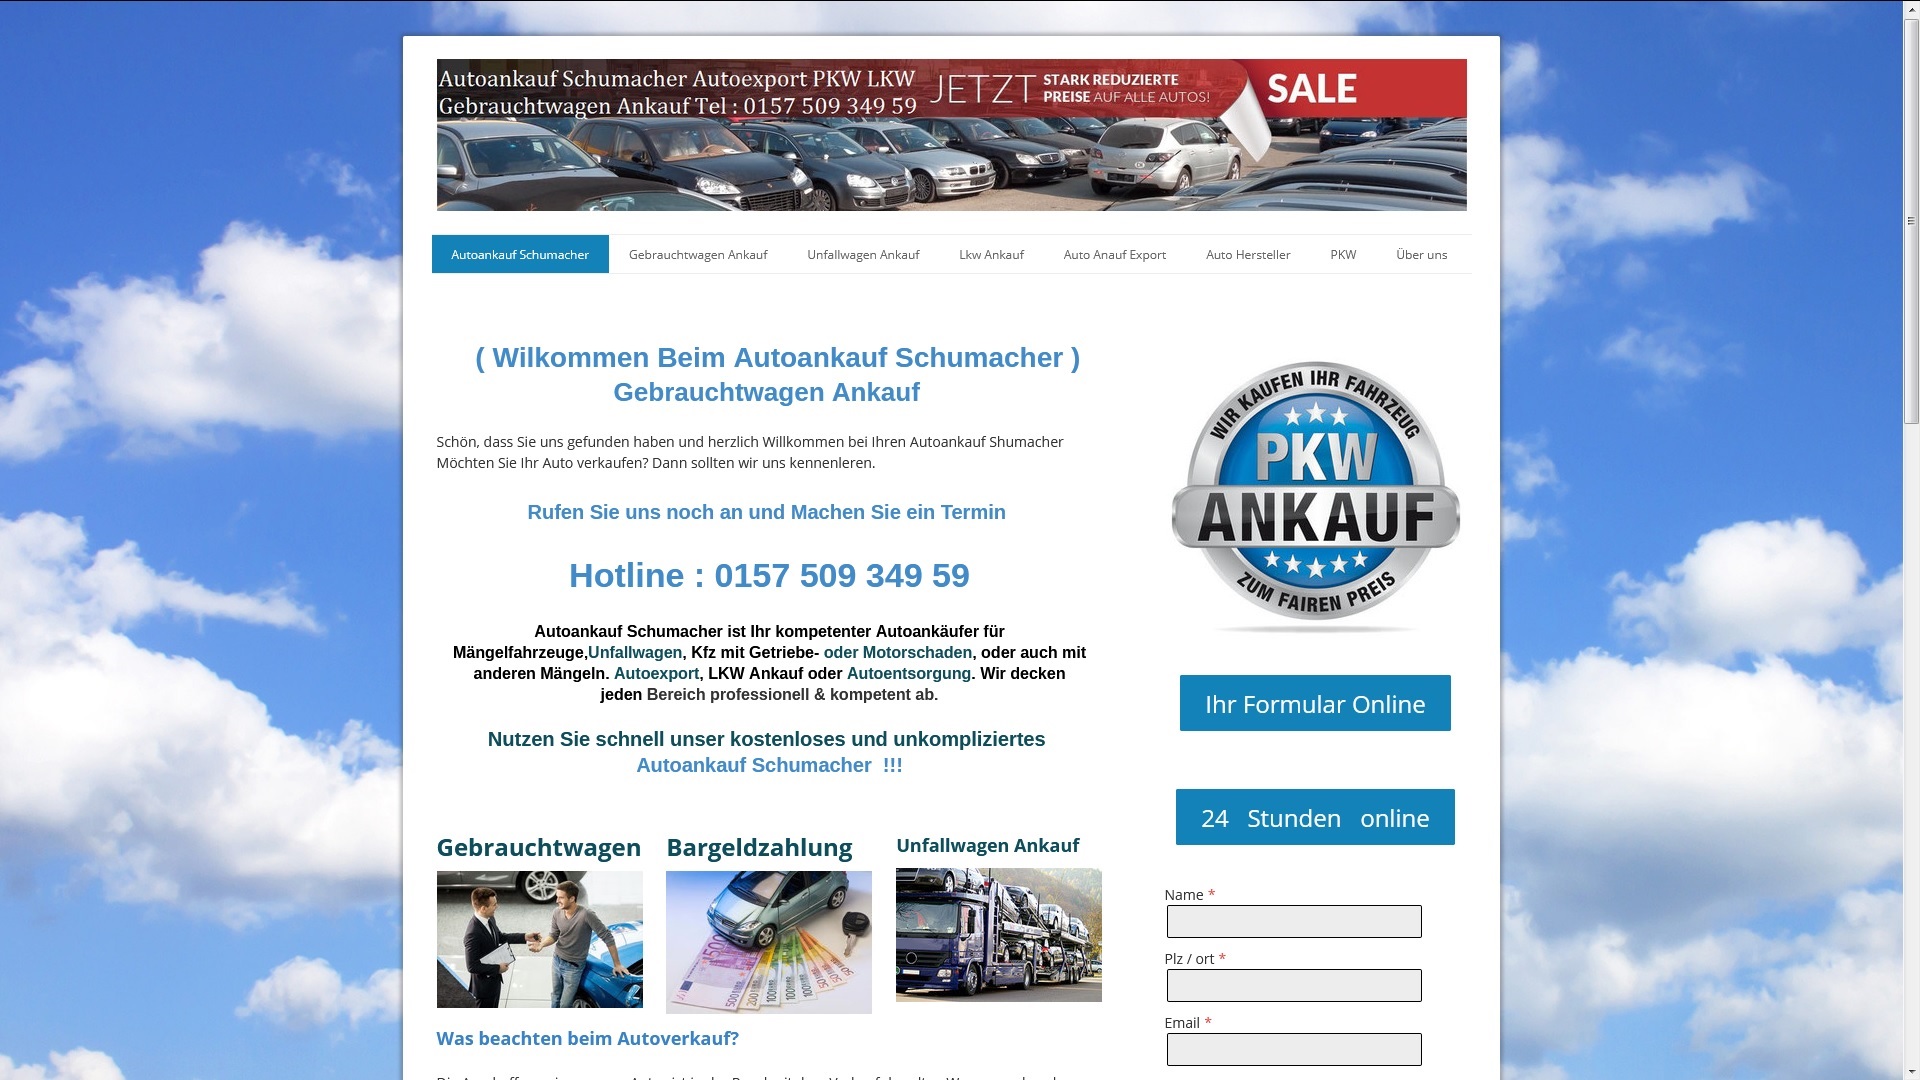 autoankauf ravensburg wir sind fokussiert auf pkw und lkw ankauf sowie auf den ankauf von maengelfahrzeugen - Autoankauf Ravensburg – Wir sind fokussiert auf PKW und LKW-Ankauf sowie auf den Ankauf von Mängelfahrzeugen